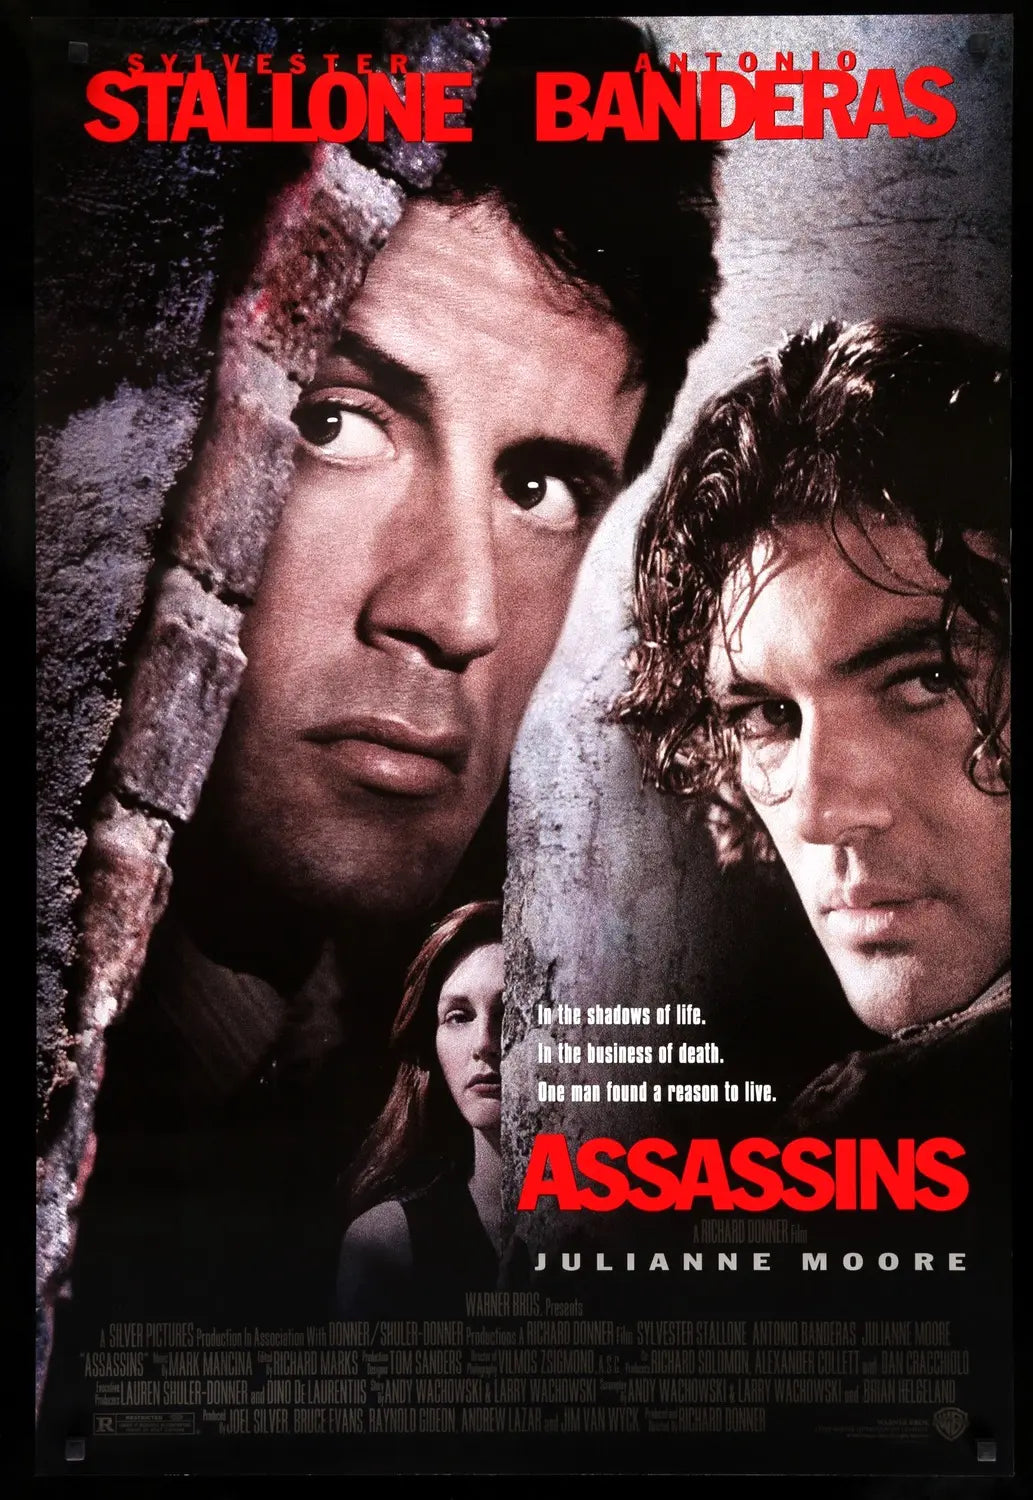 Assassins (1995) original movie poster for sale at Original Film Art